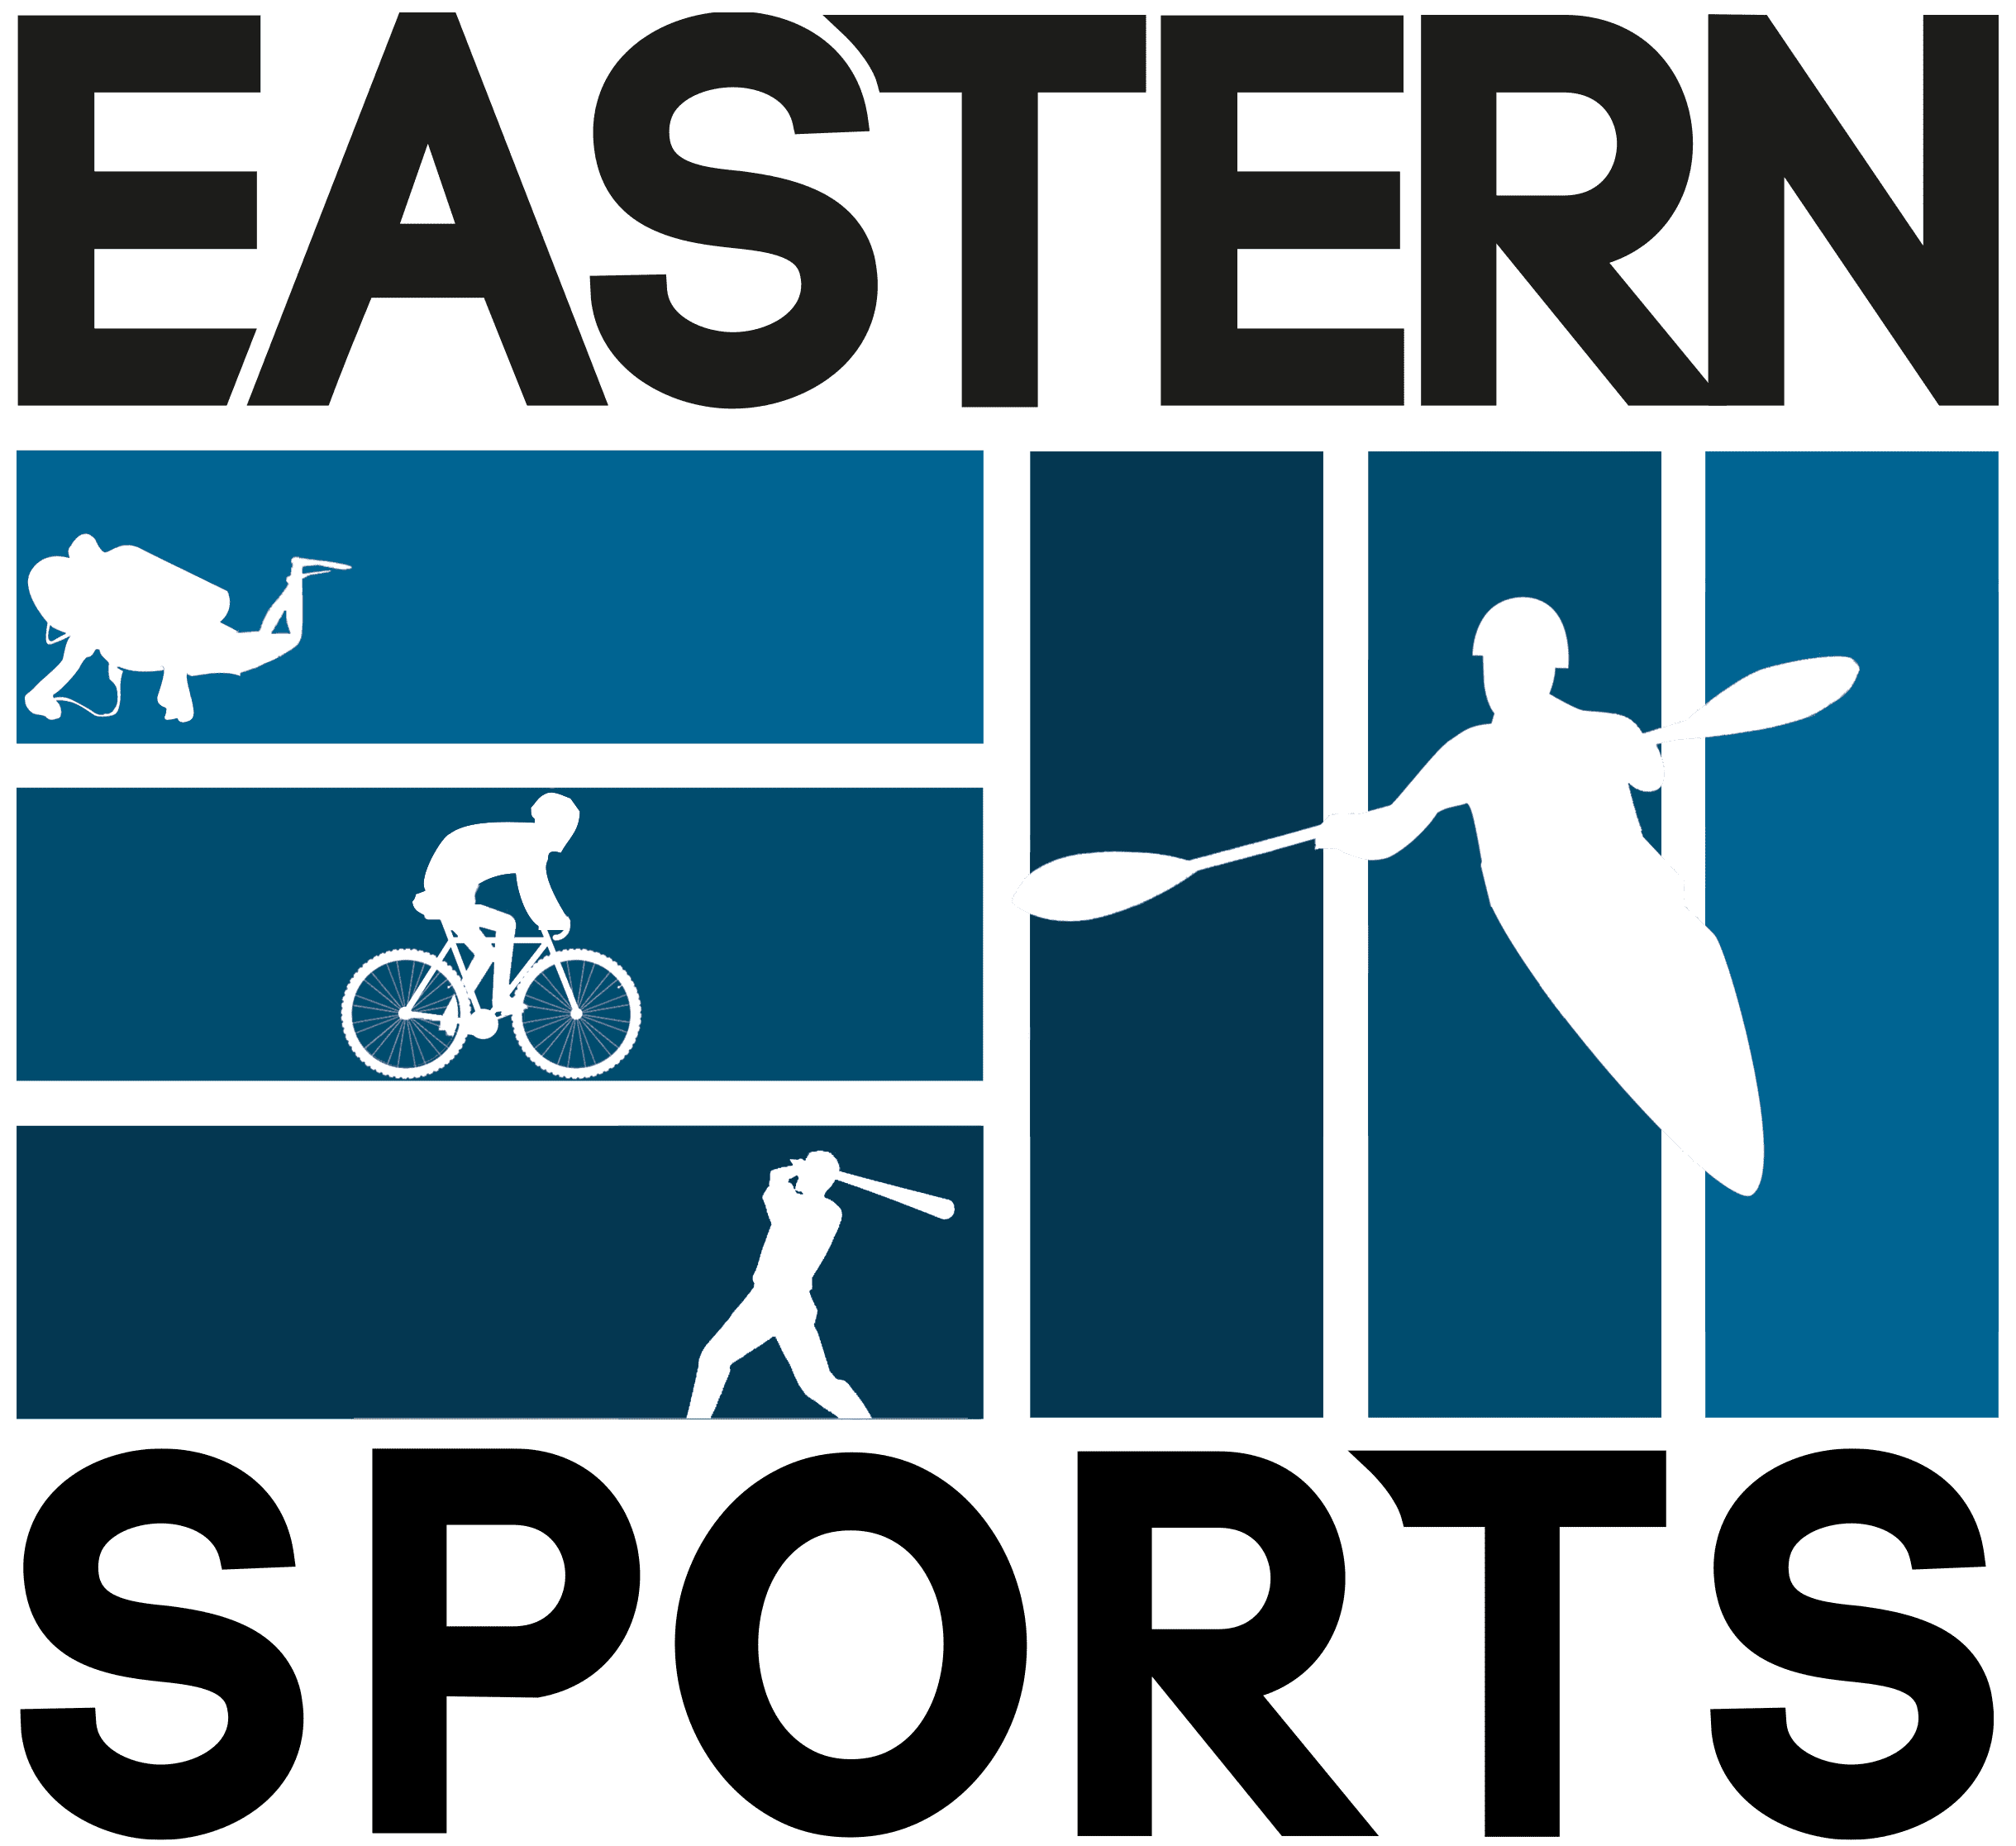 Eastern Watersports